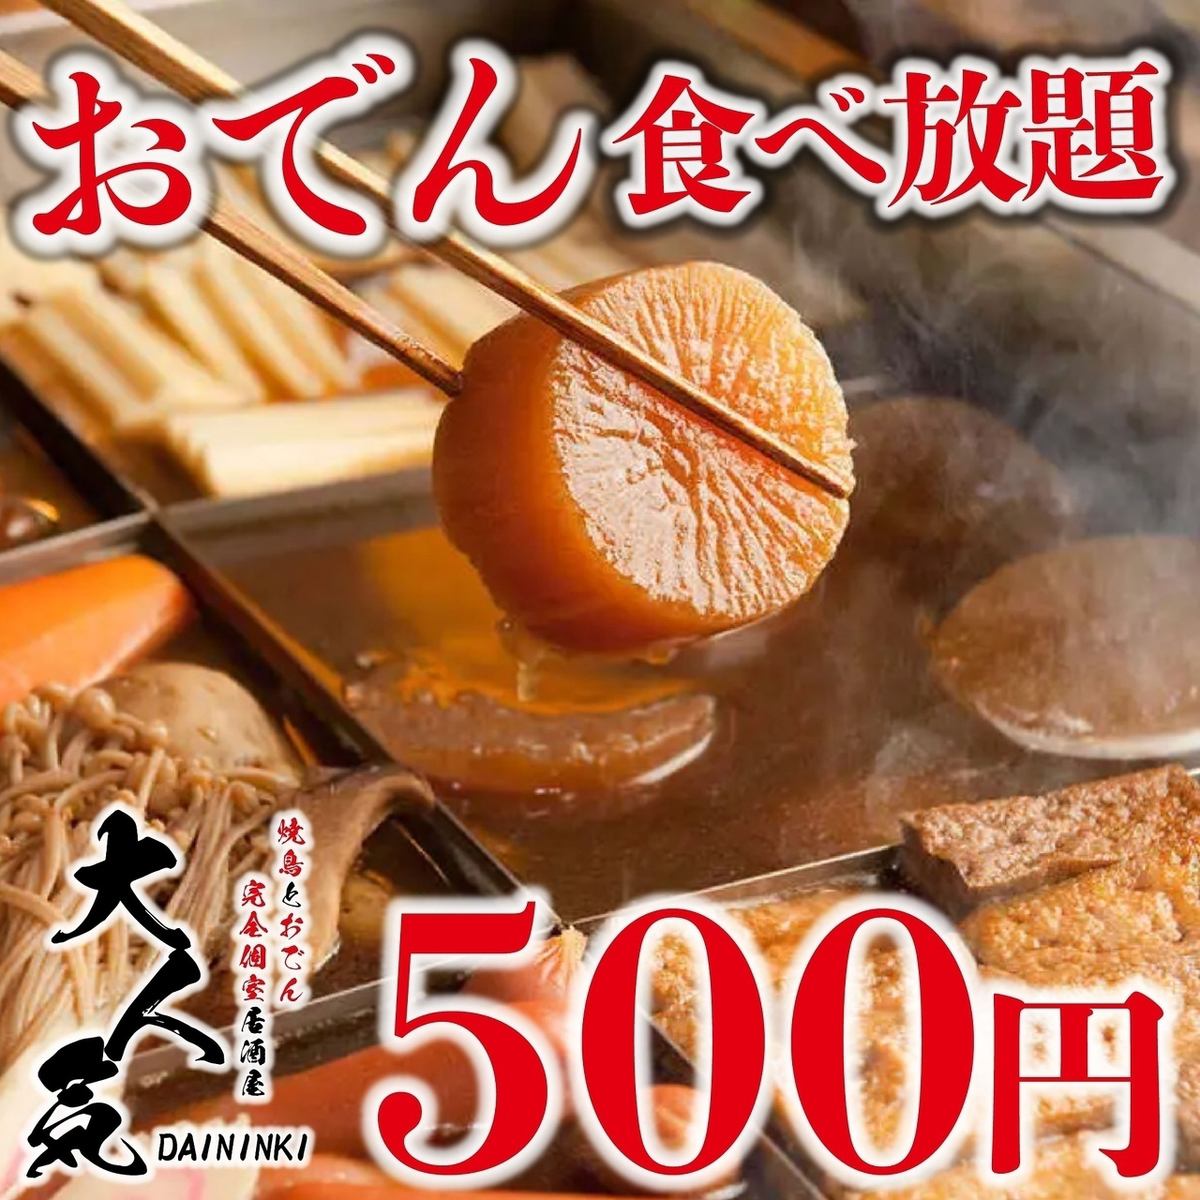 包括特製湯料關東煮在內的130種菜餚的自助餐只要3,500日圓。